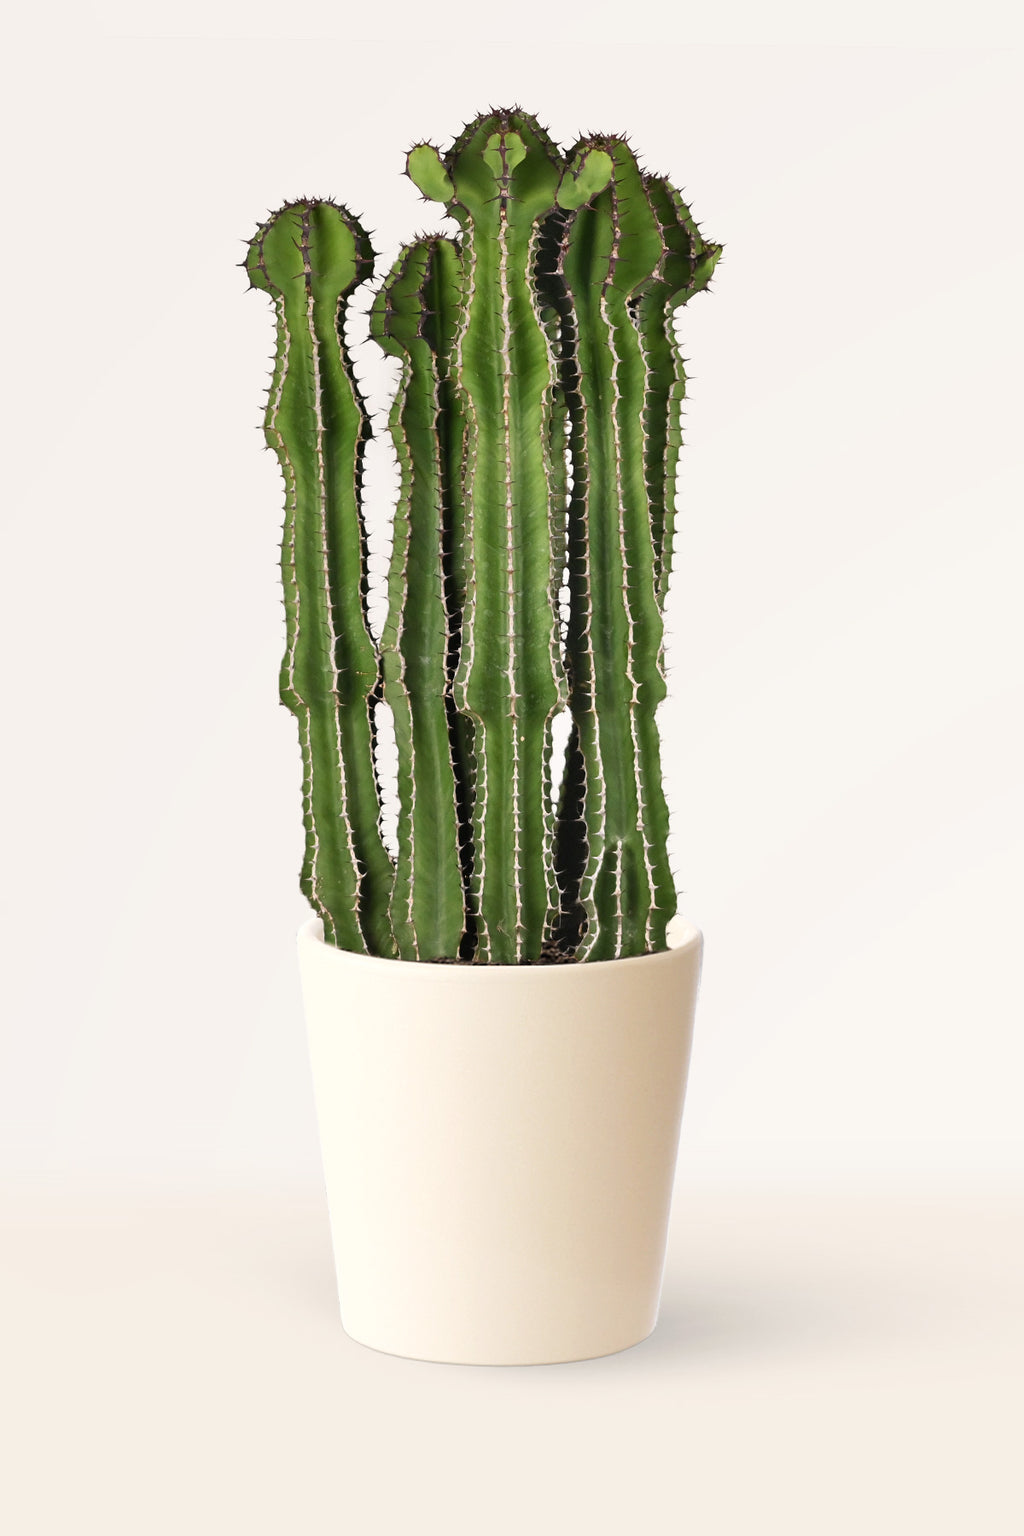 Comprar Cactus & Suculentas online